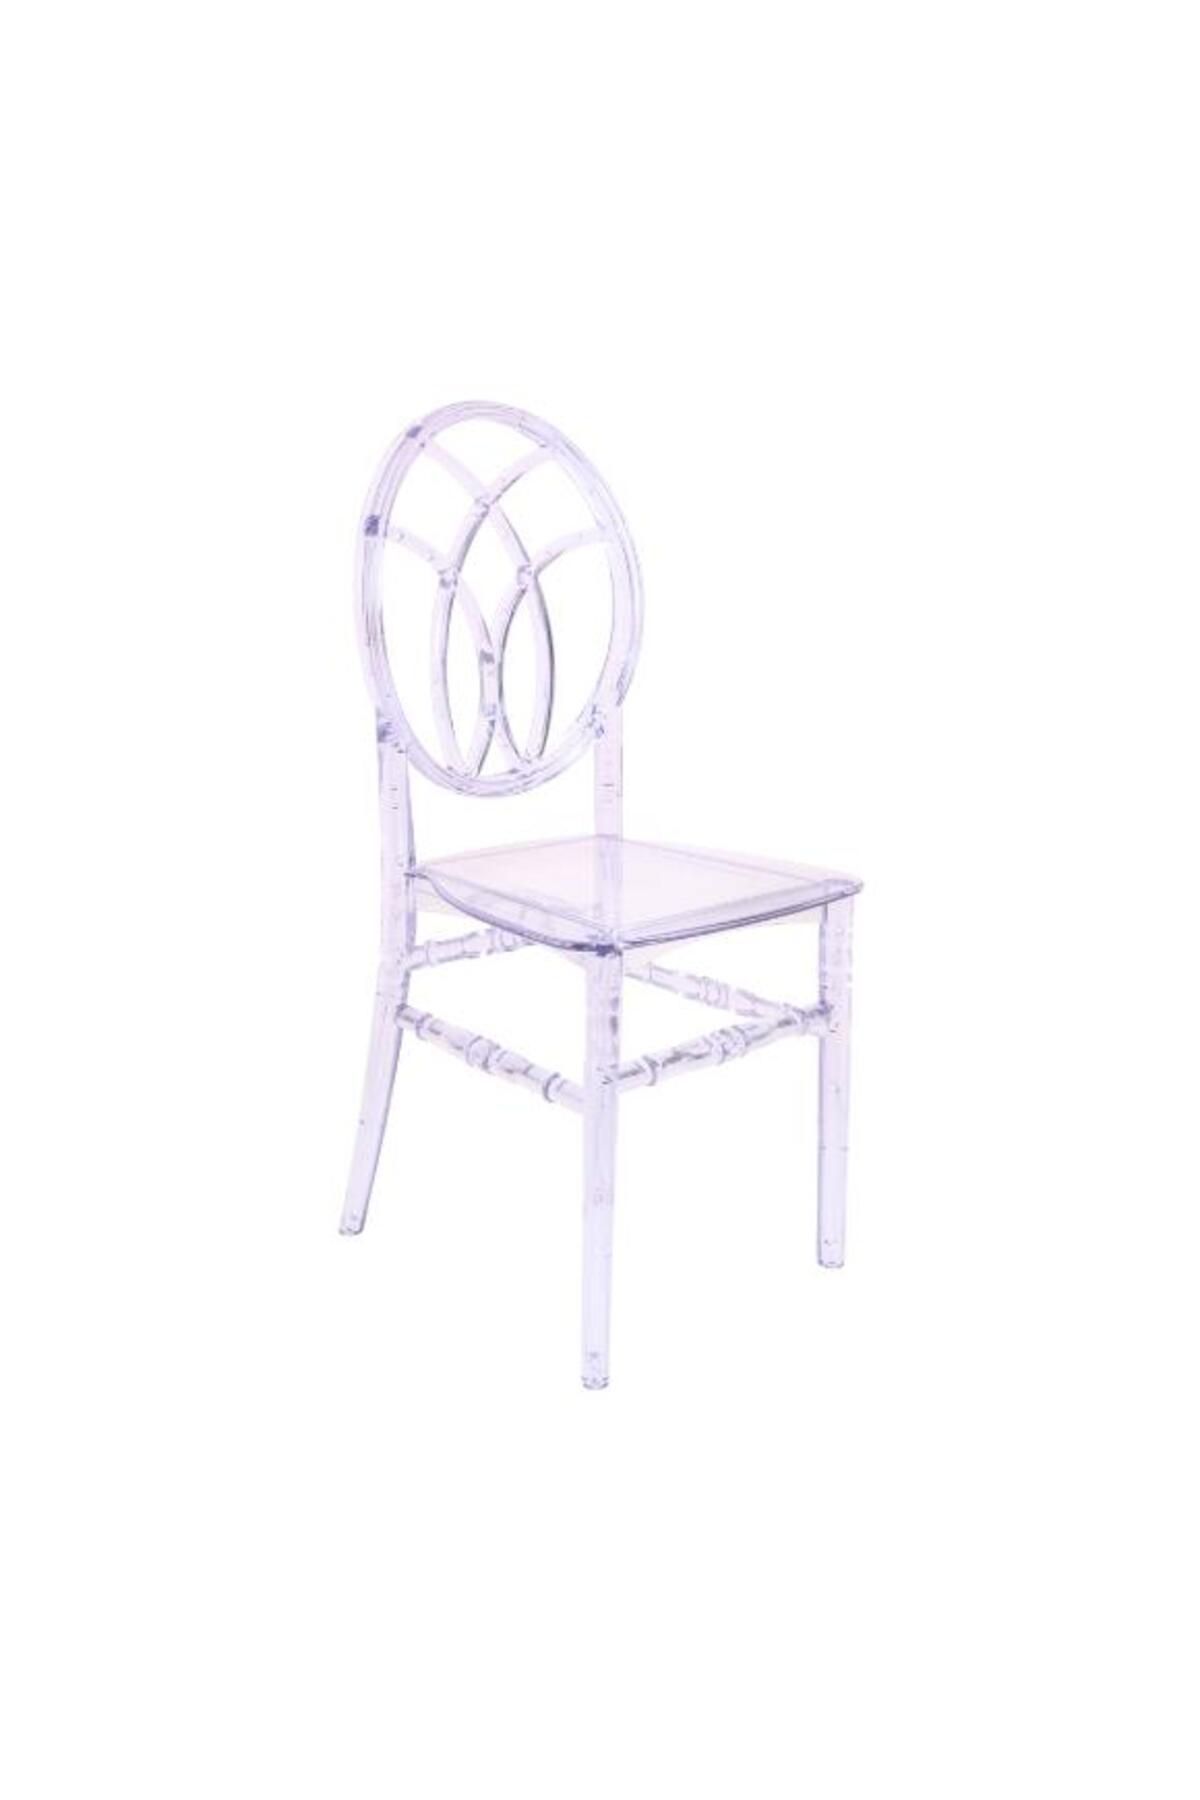 Mandella Karmen Şeffaf Kırılmaya Dayanıklı Sandalye Model 11 (6 Adet)